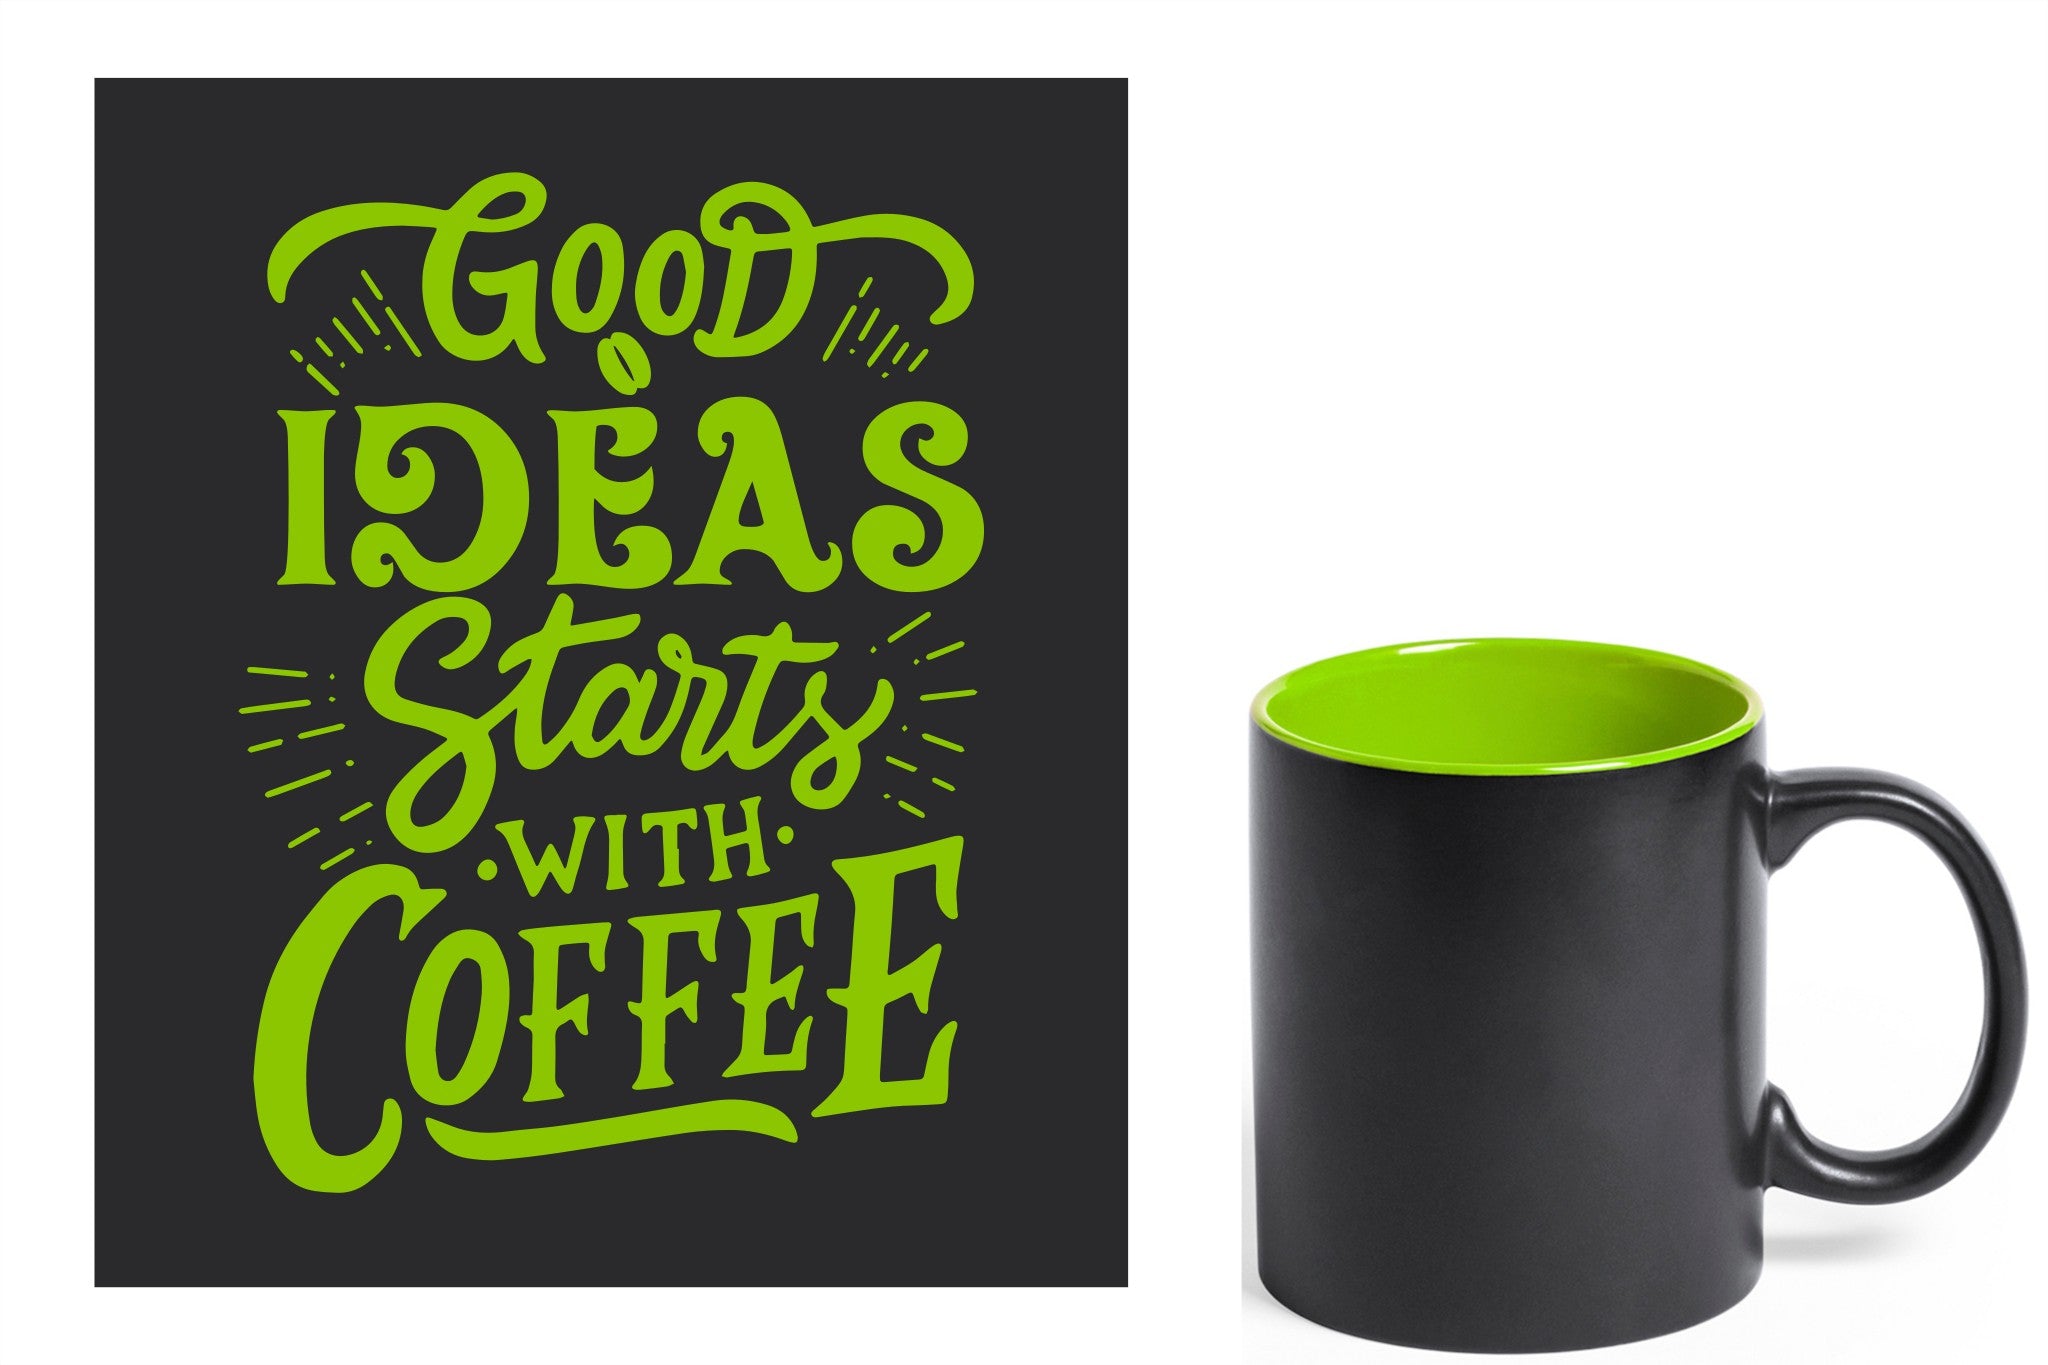 zwarte keramische mok met groene gravure  'Good ideas starts with coffee'.